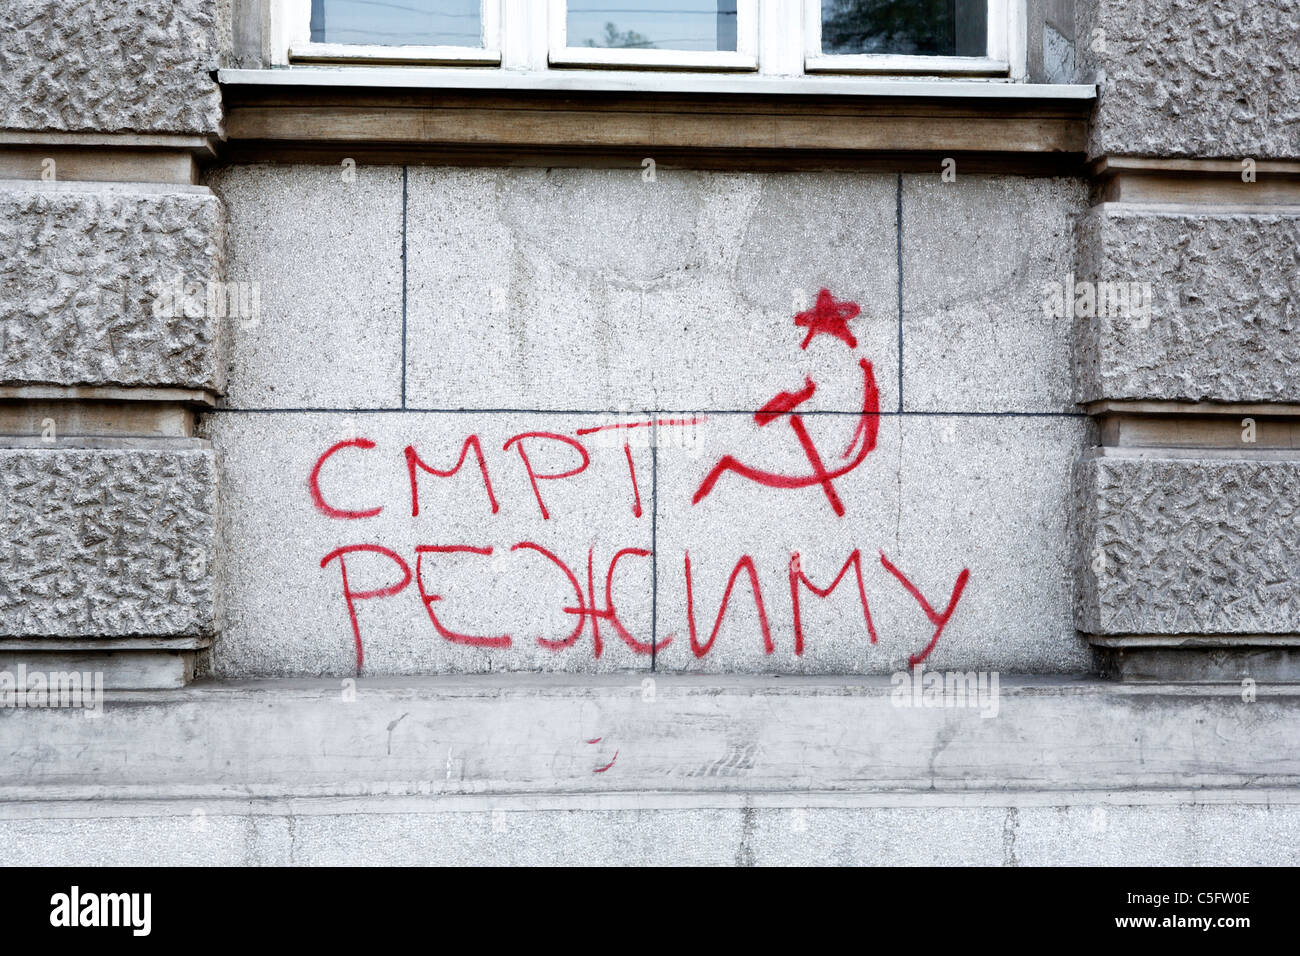 'Death to regime' graffiti, Belgrade (Beograd), Serbia Stock Photo